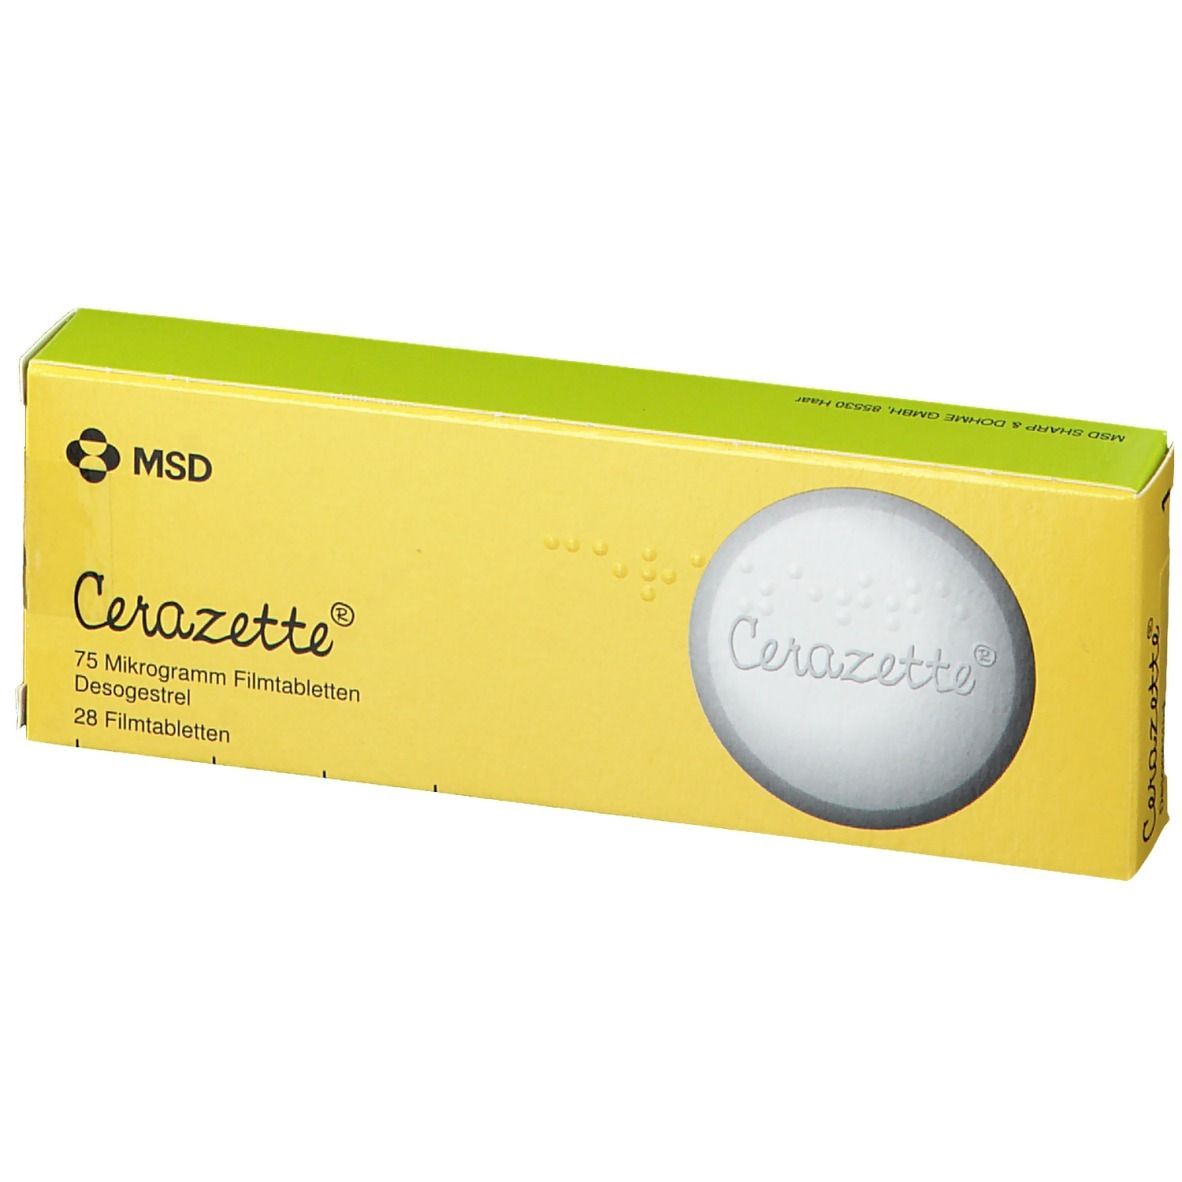 Cerazette® 75 µg